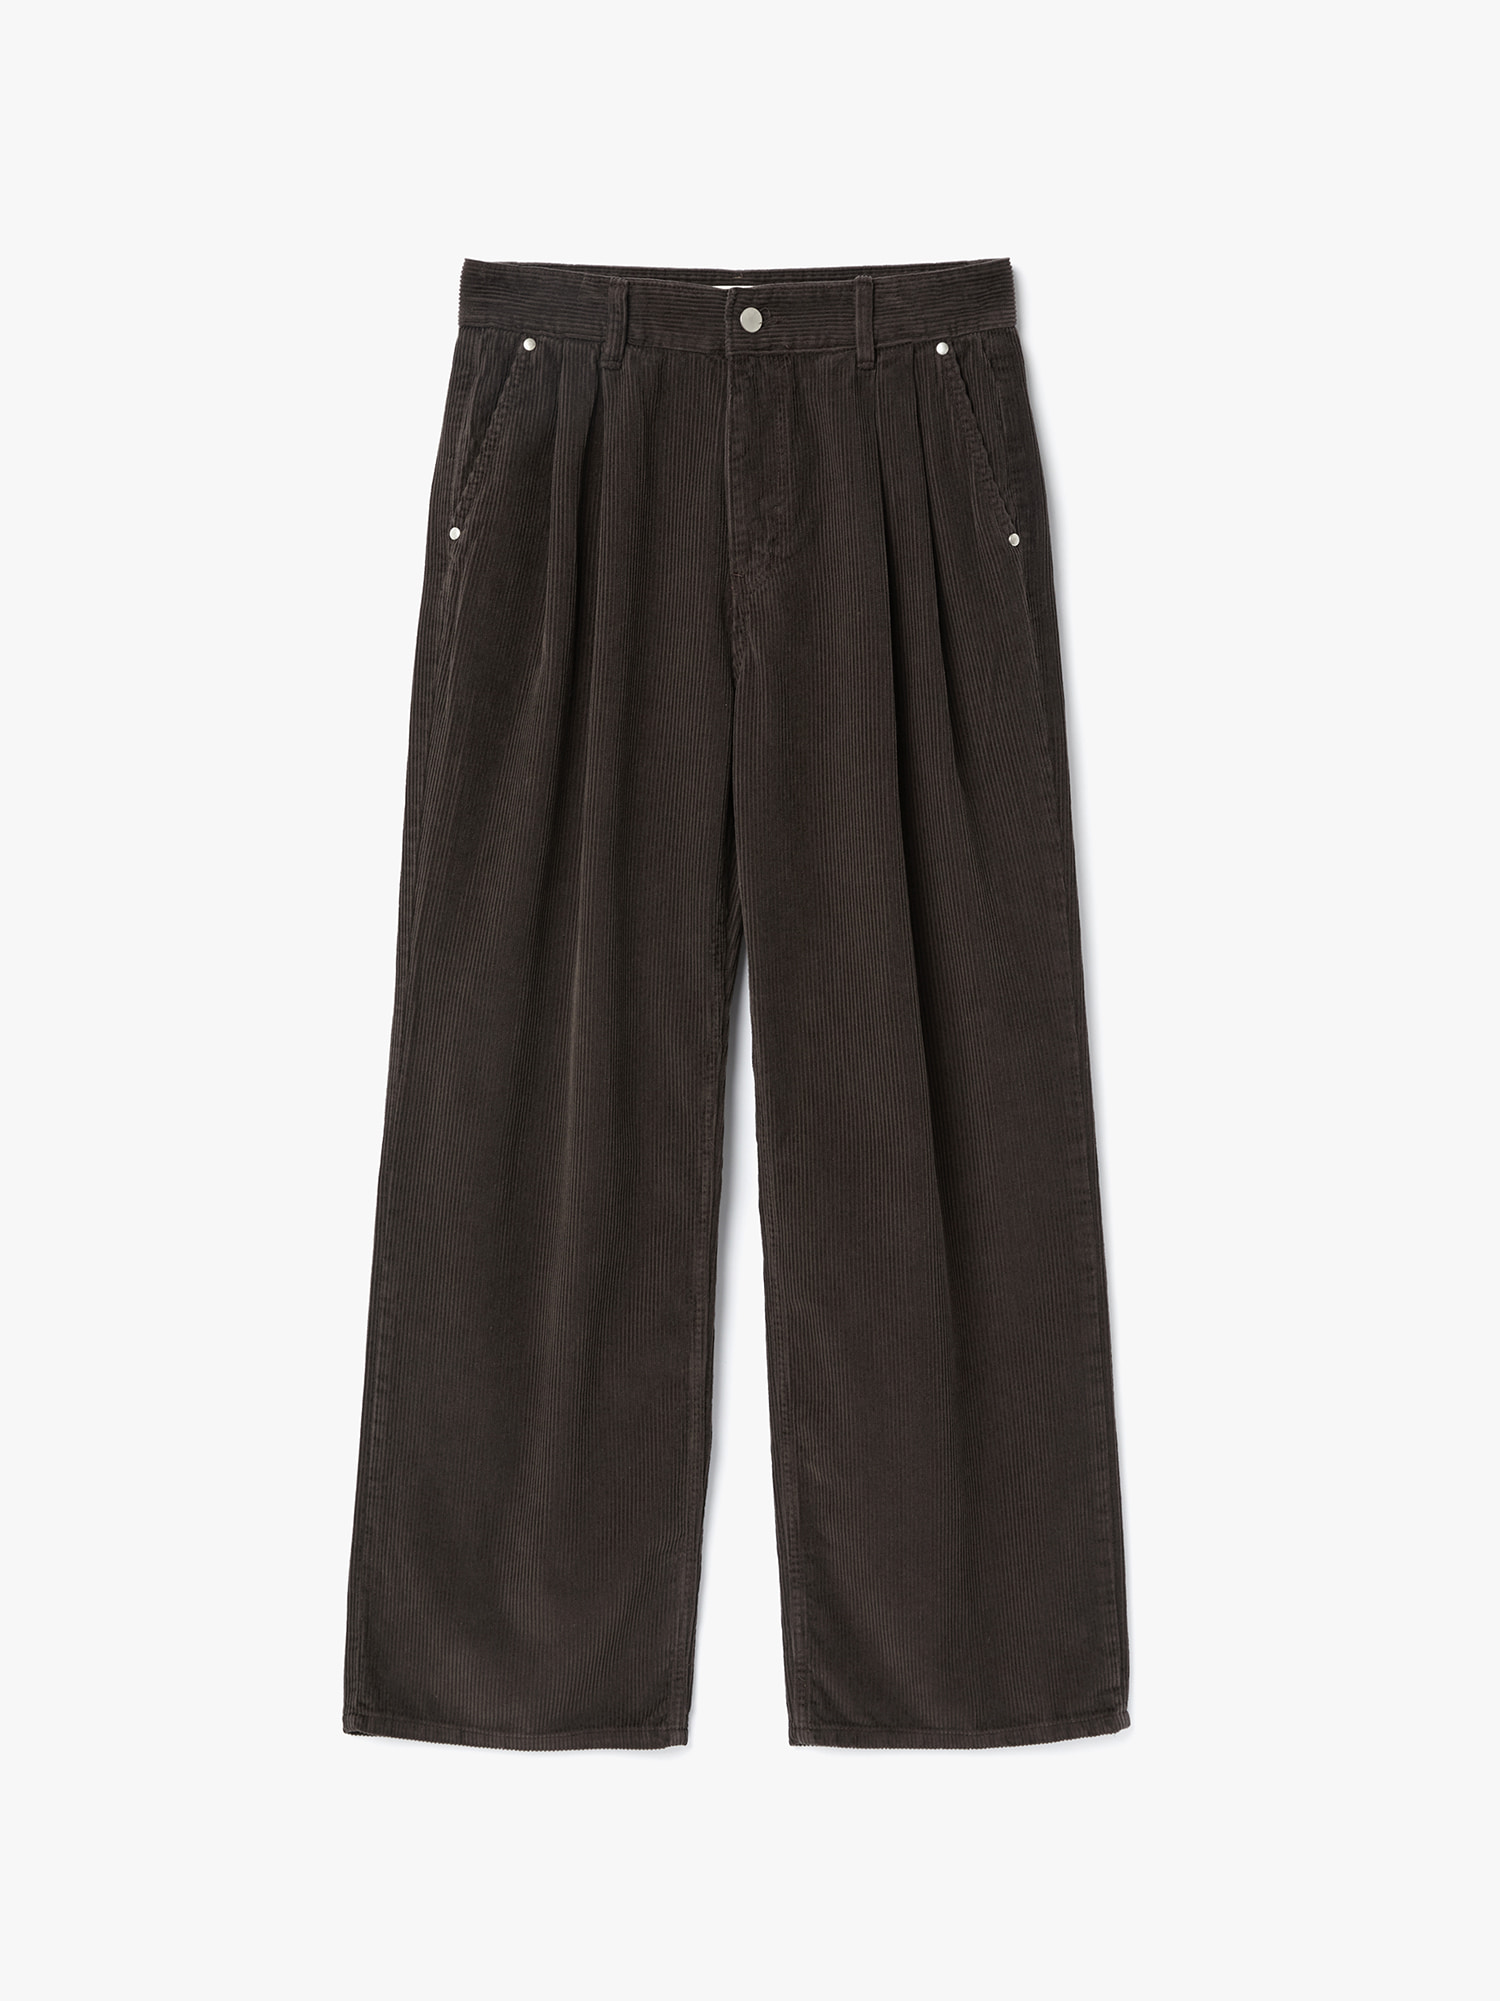 8W Corduroy Two-Tuck Pants (Dark Brown)